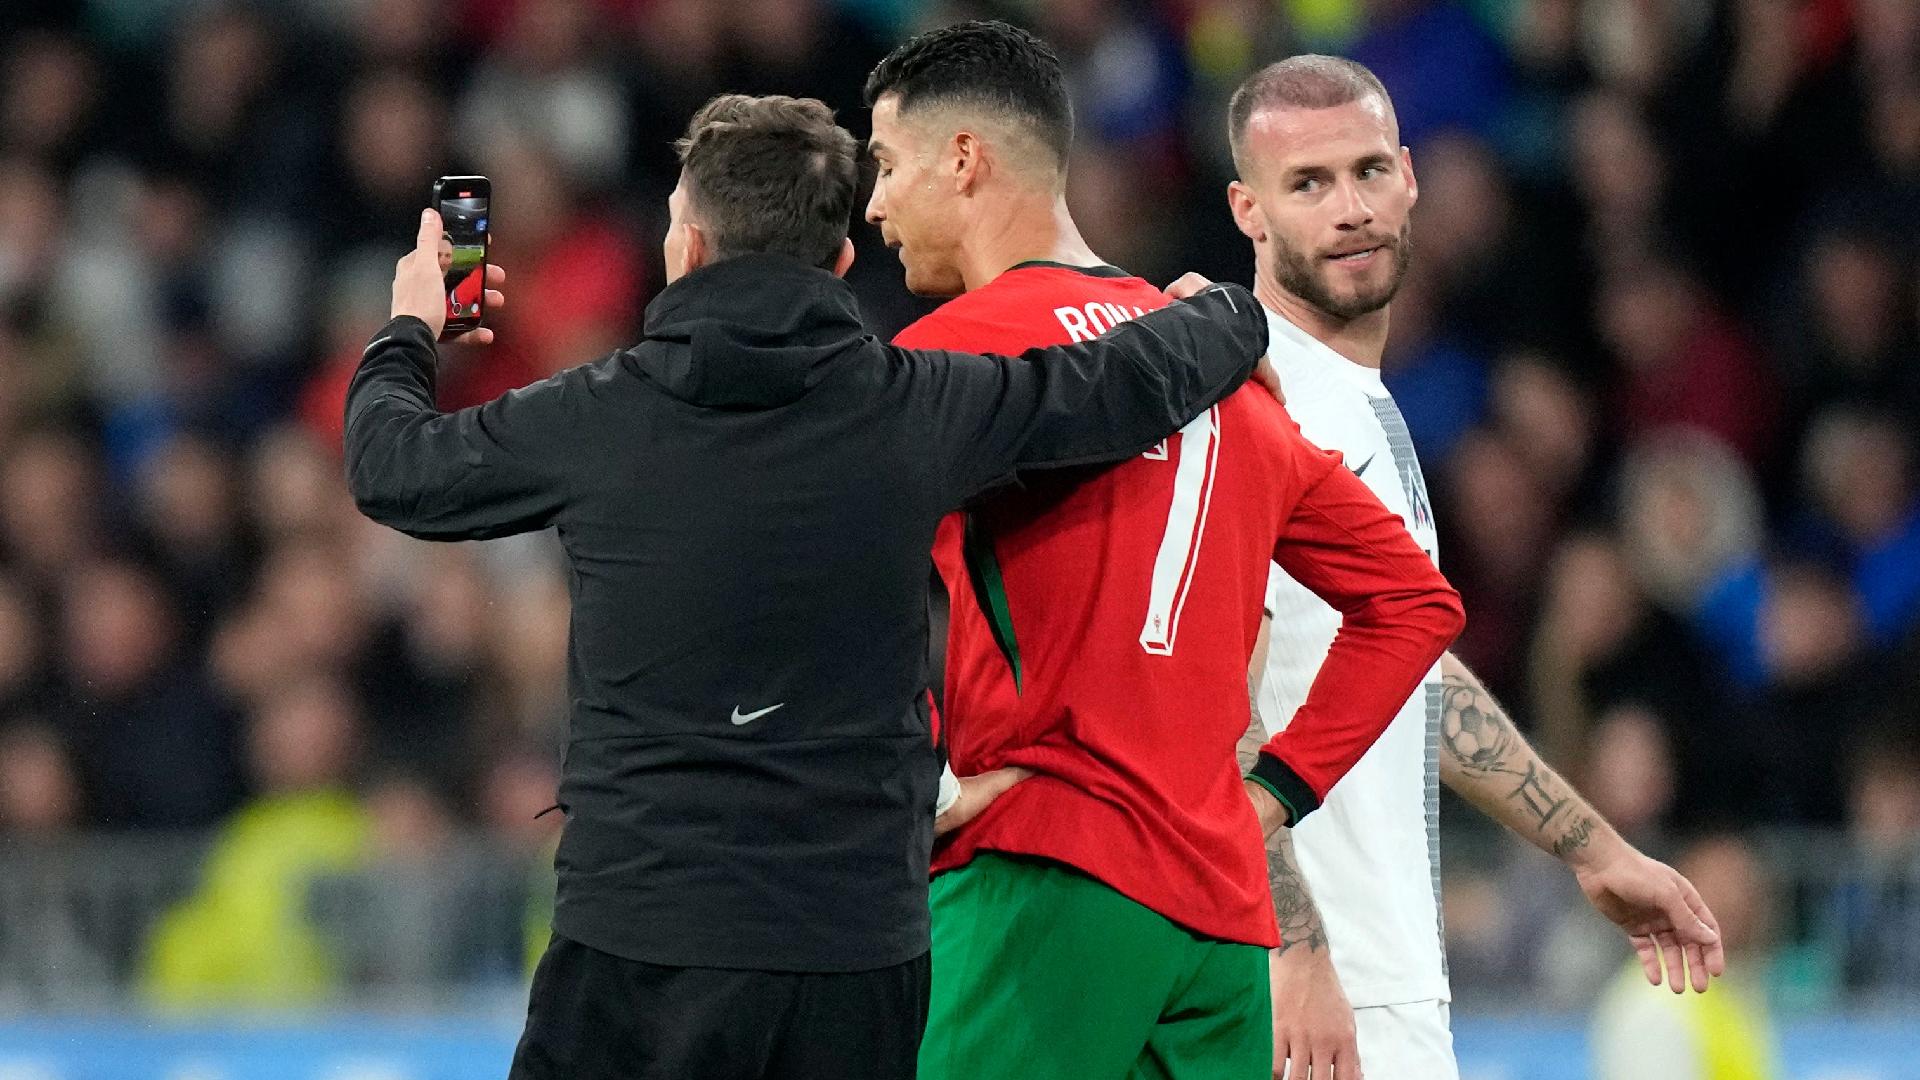 Gạt Ronaldo, chuyên gia chỉ tên cầu thủ xuất sắc nhất Bồ Đào Nha - ảnh 1